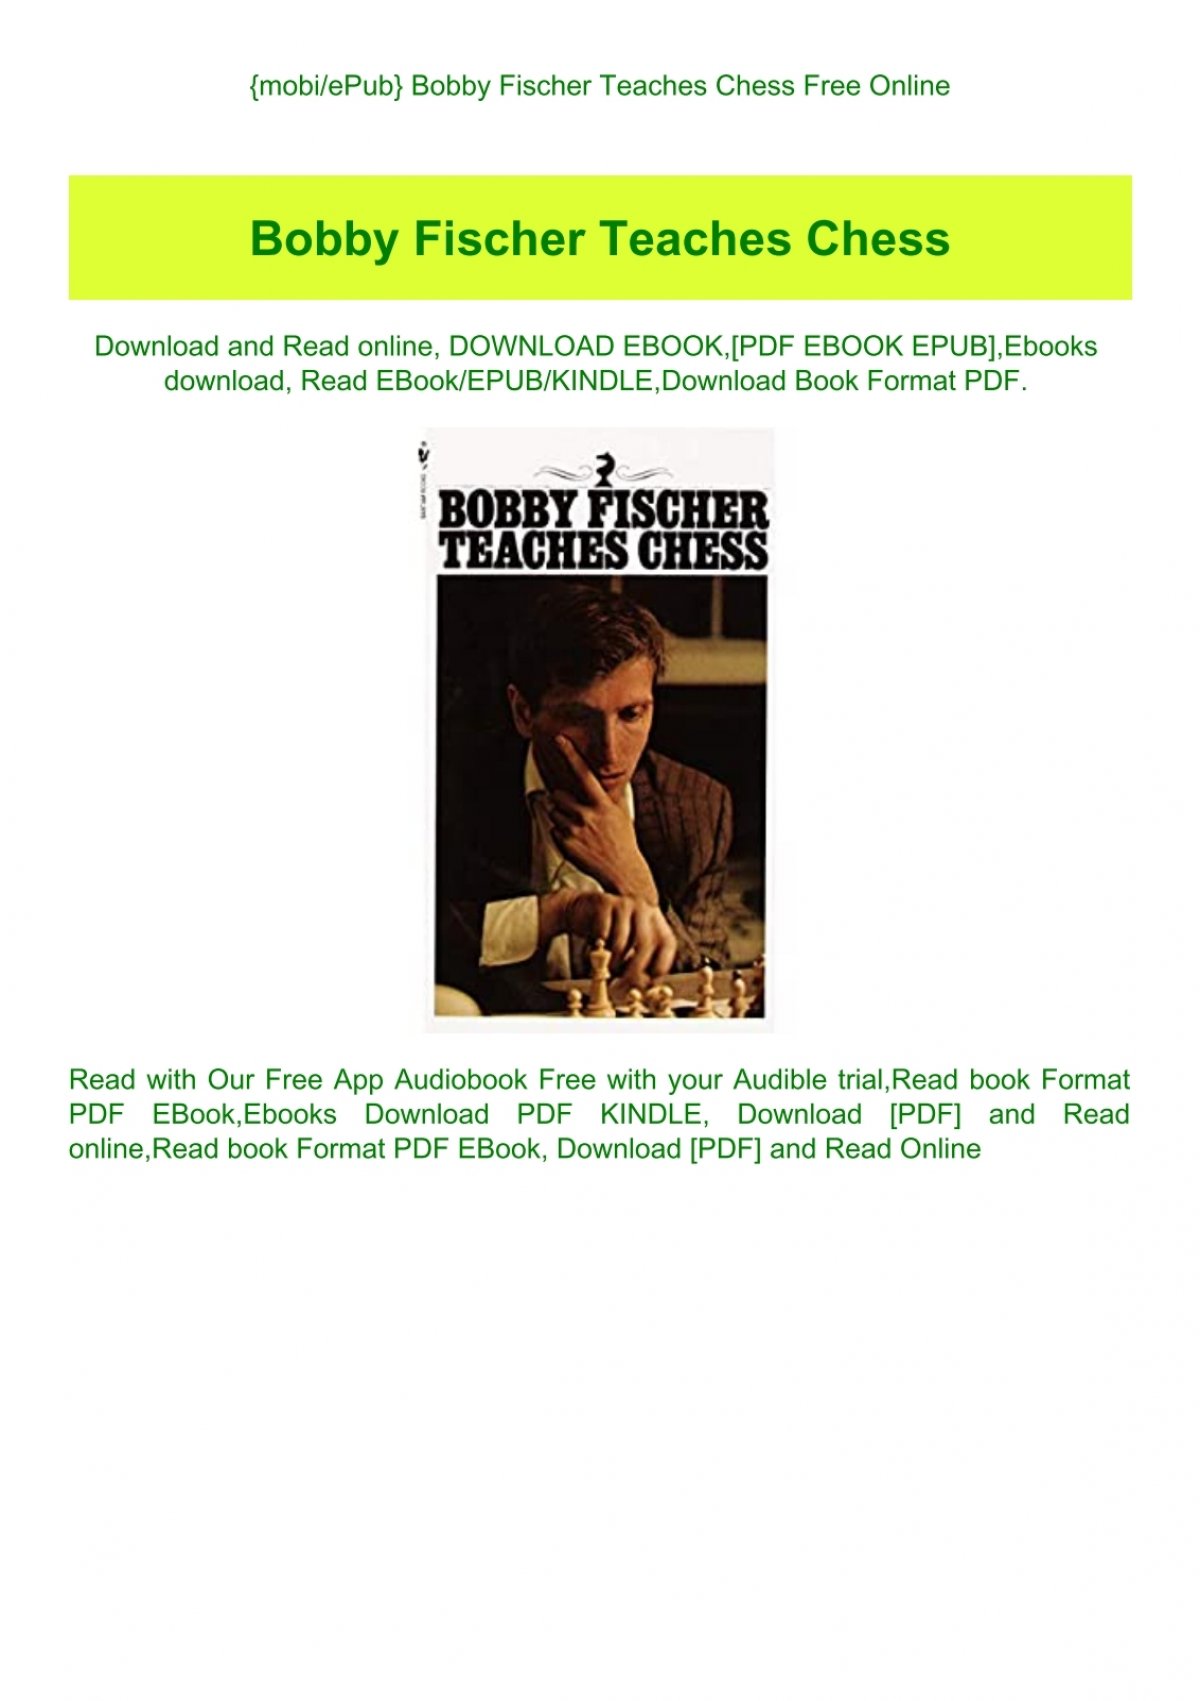 Mobiepub Bobby Fischer Teaches Chess Free Online